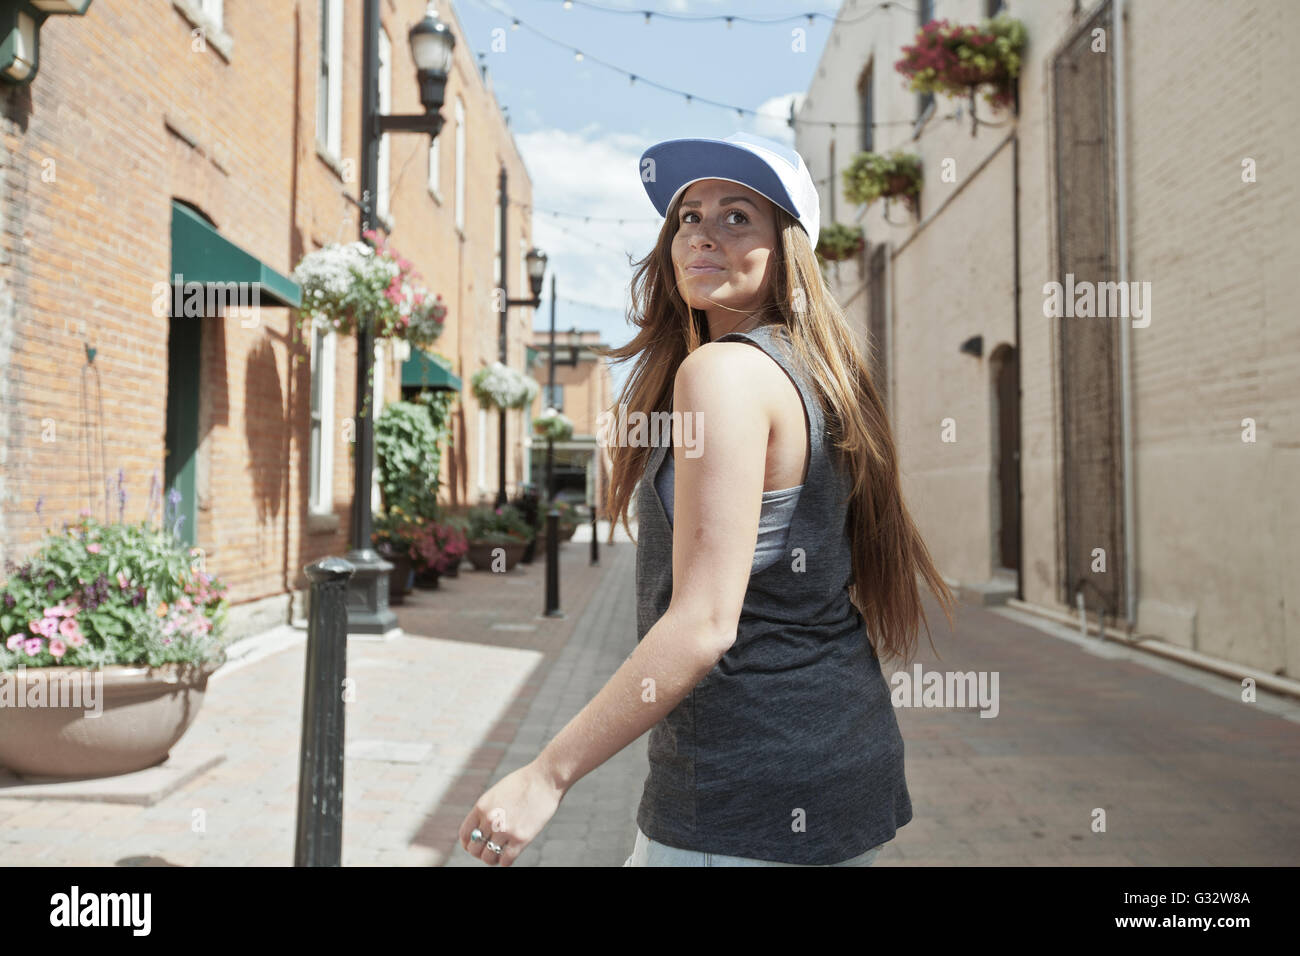 Woman walking through city, Colorado, United States Stock Photo